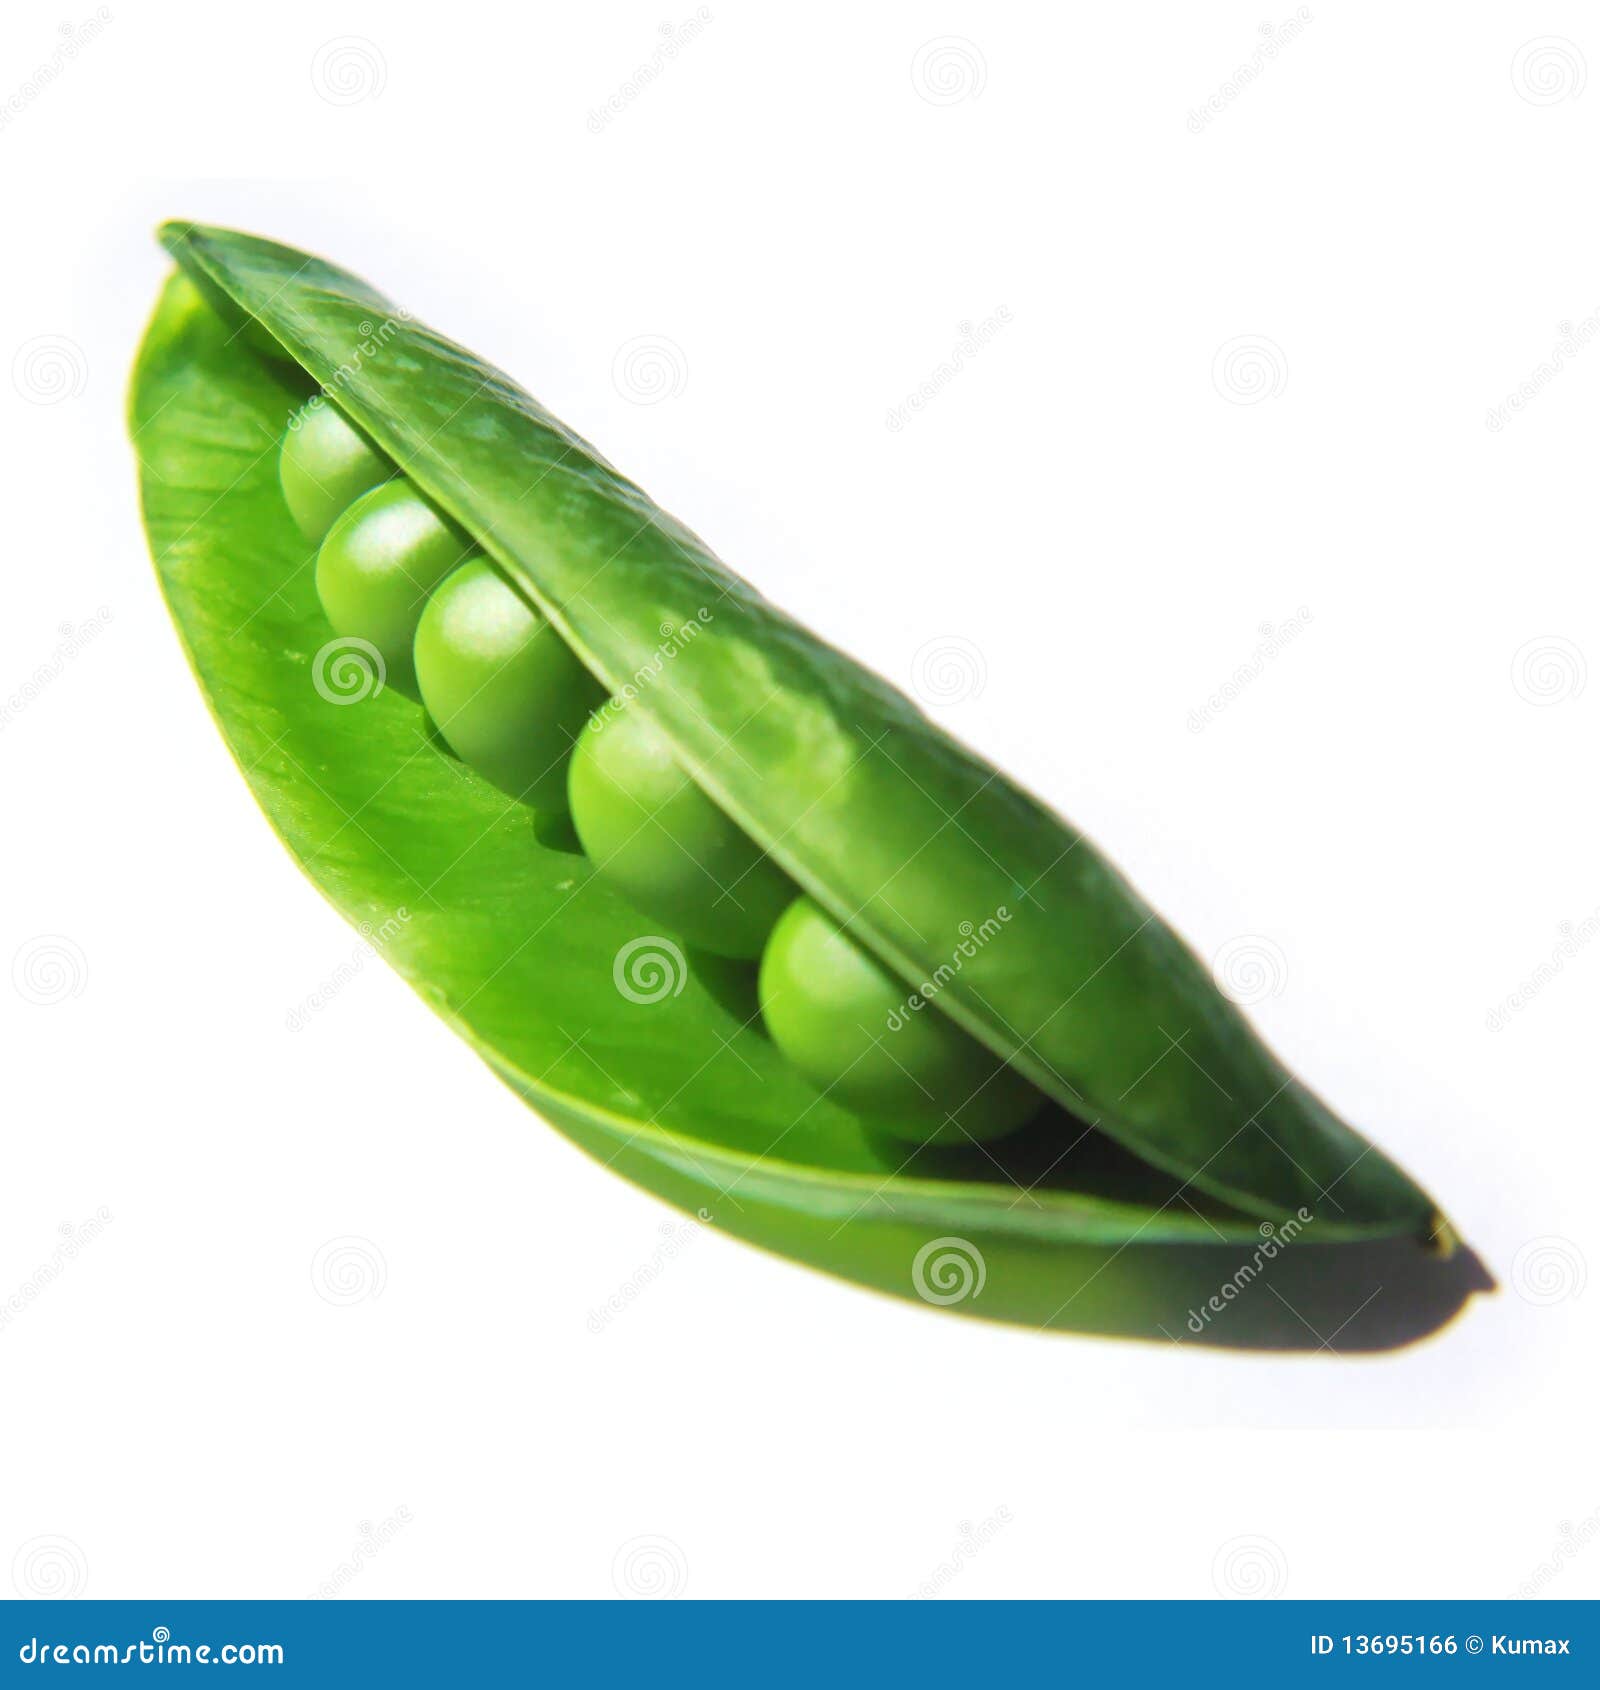 green peas clipart - photo #12